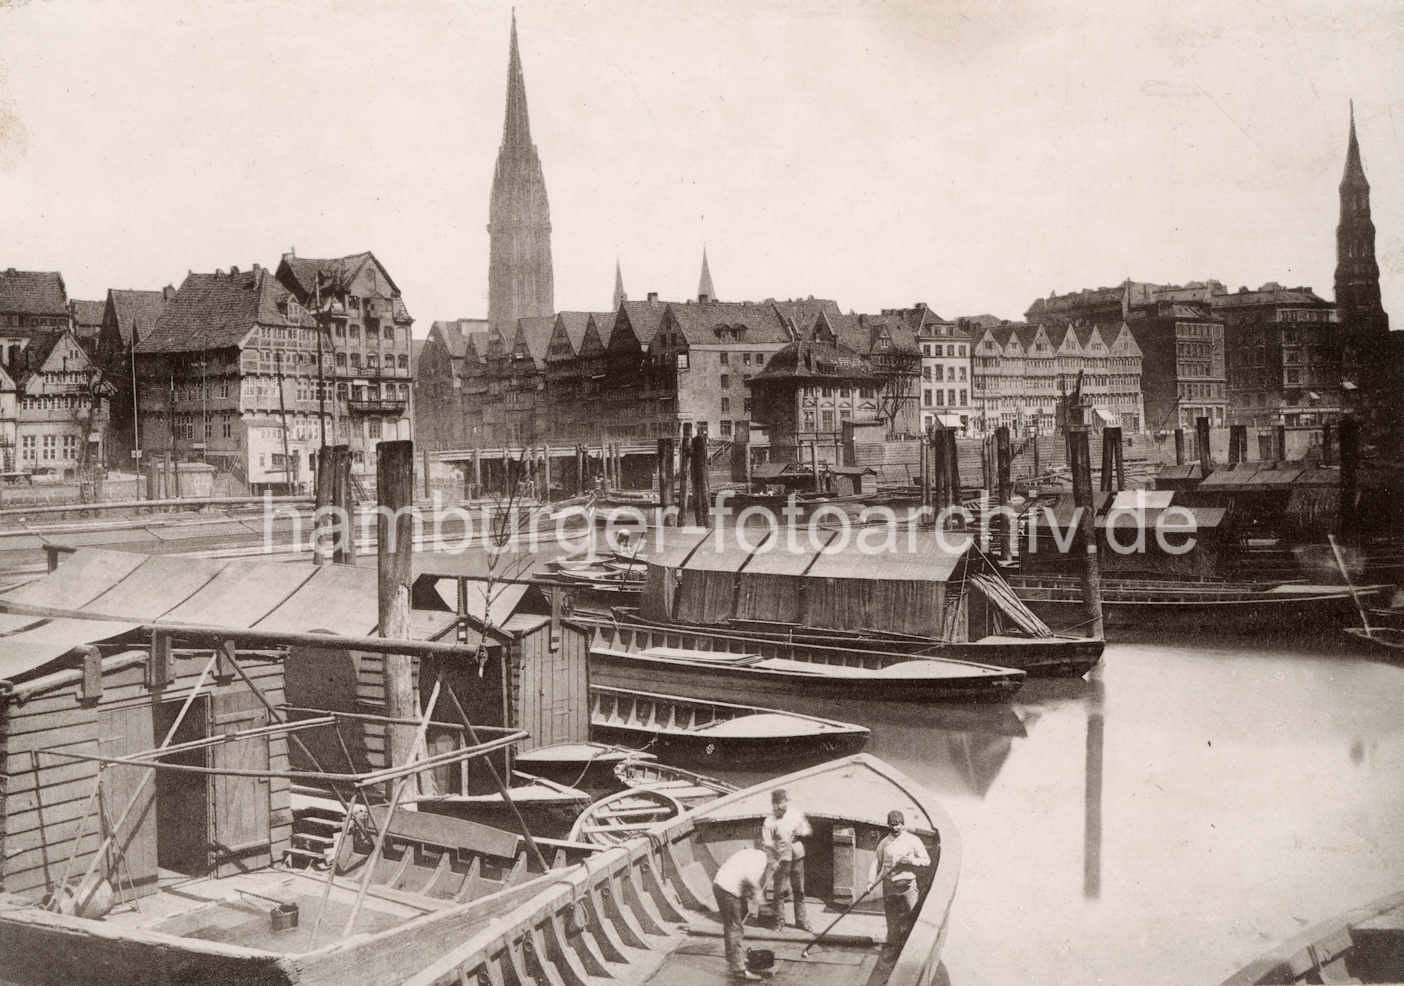 X000131 Historische Fotografie von der Hamburger Altstadt; Arbeitsboote liegen im Binnenhafen. | Binnenhafen - historisches Hafenbecken in der Hamburger Altstadt.